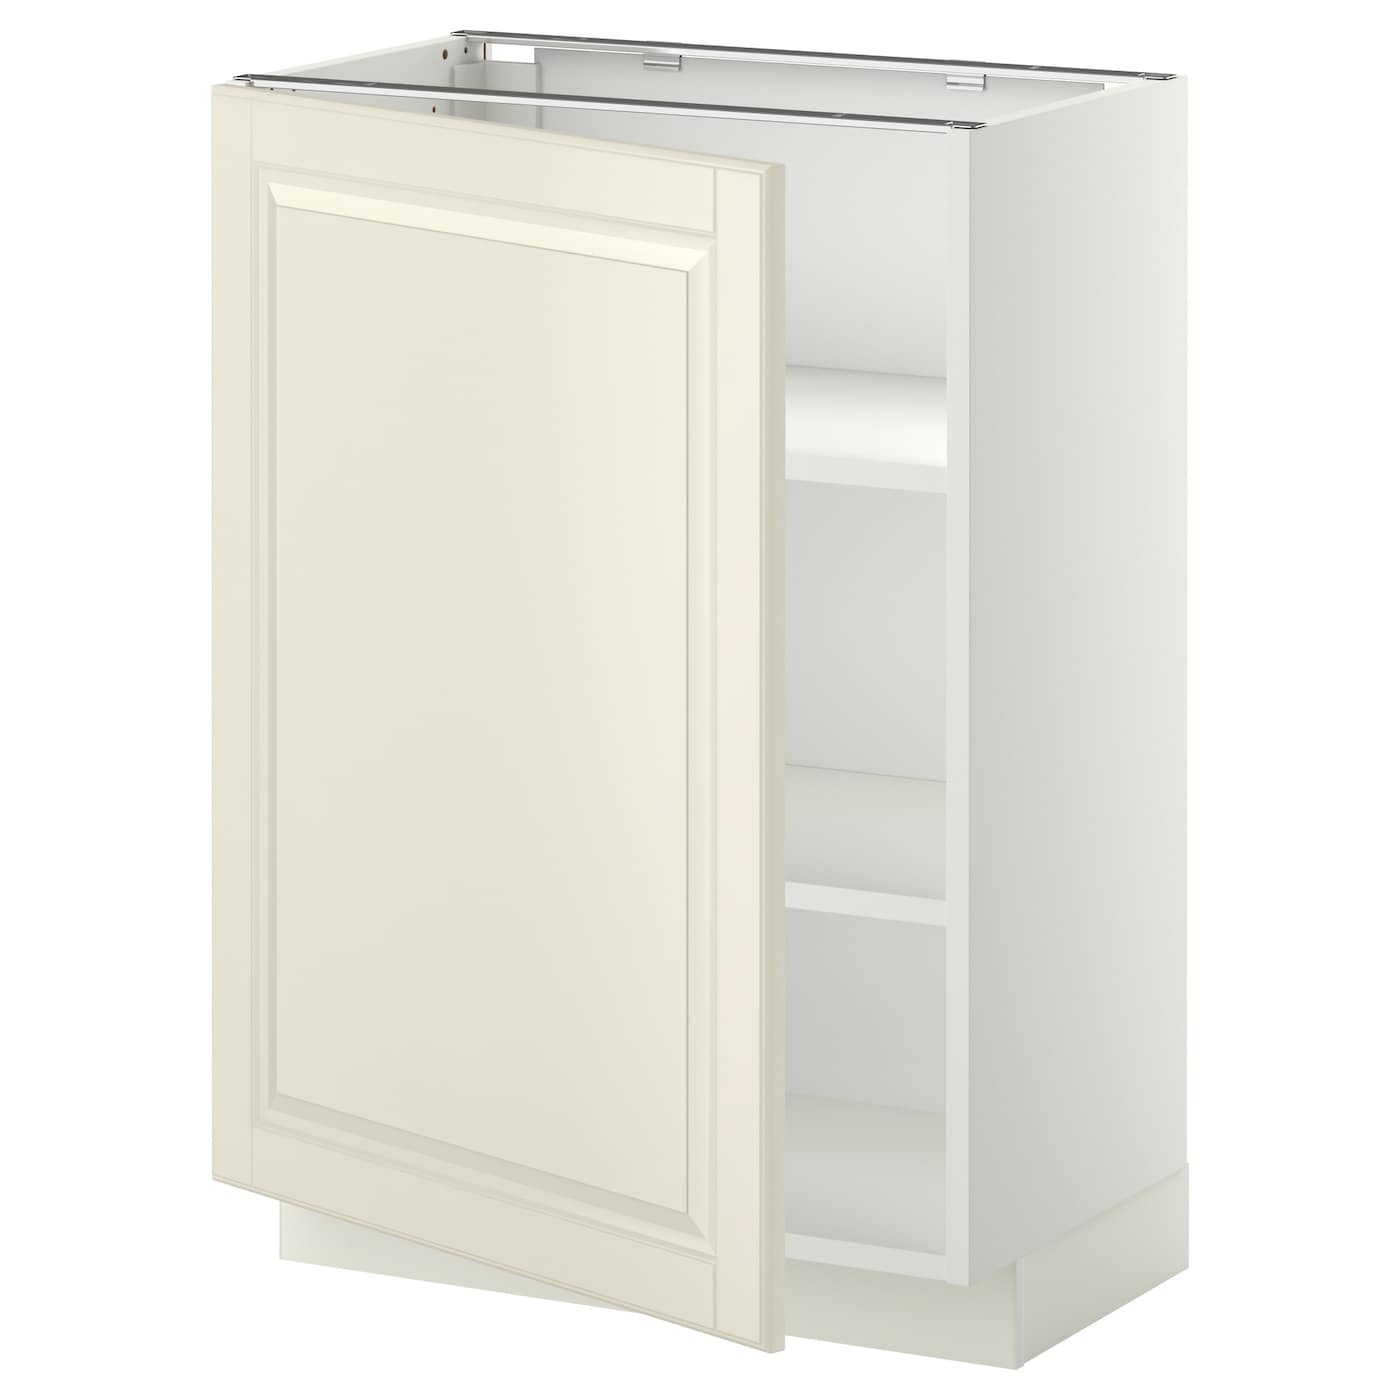 Напольный шкаф  - IKEA METOD, 88x39,5x60см, белый/светло-бежевый, МЕТОД ИКЕА